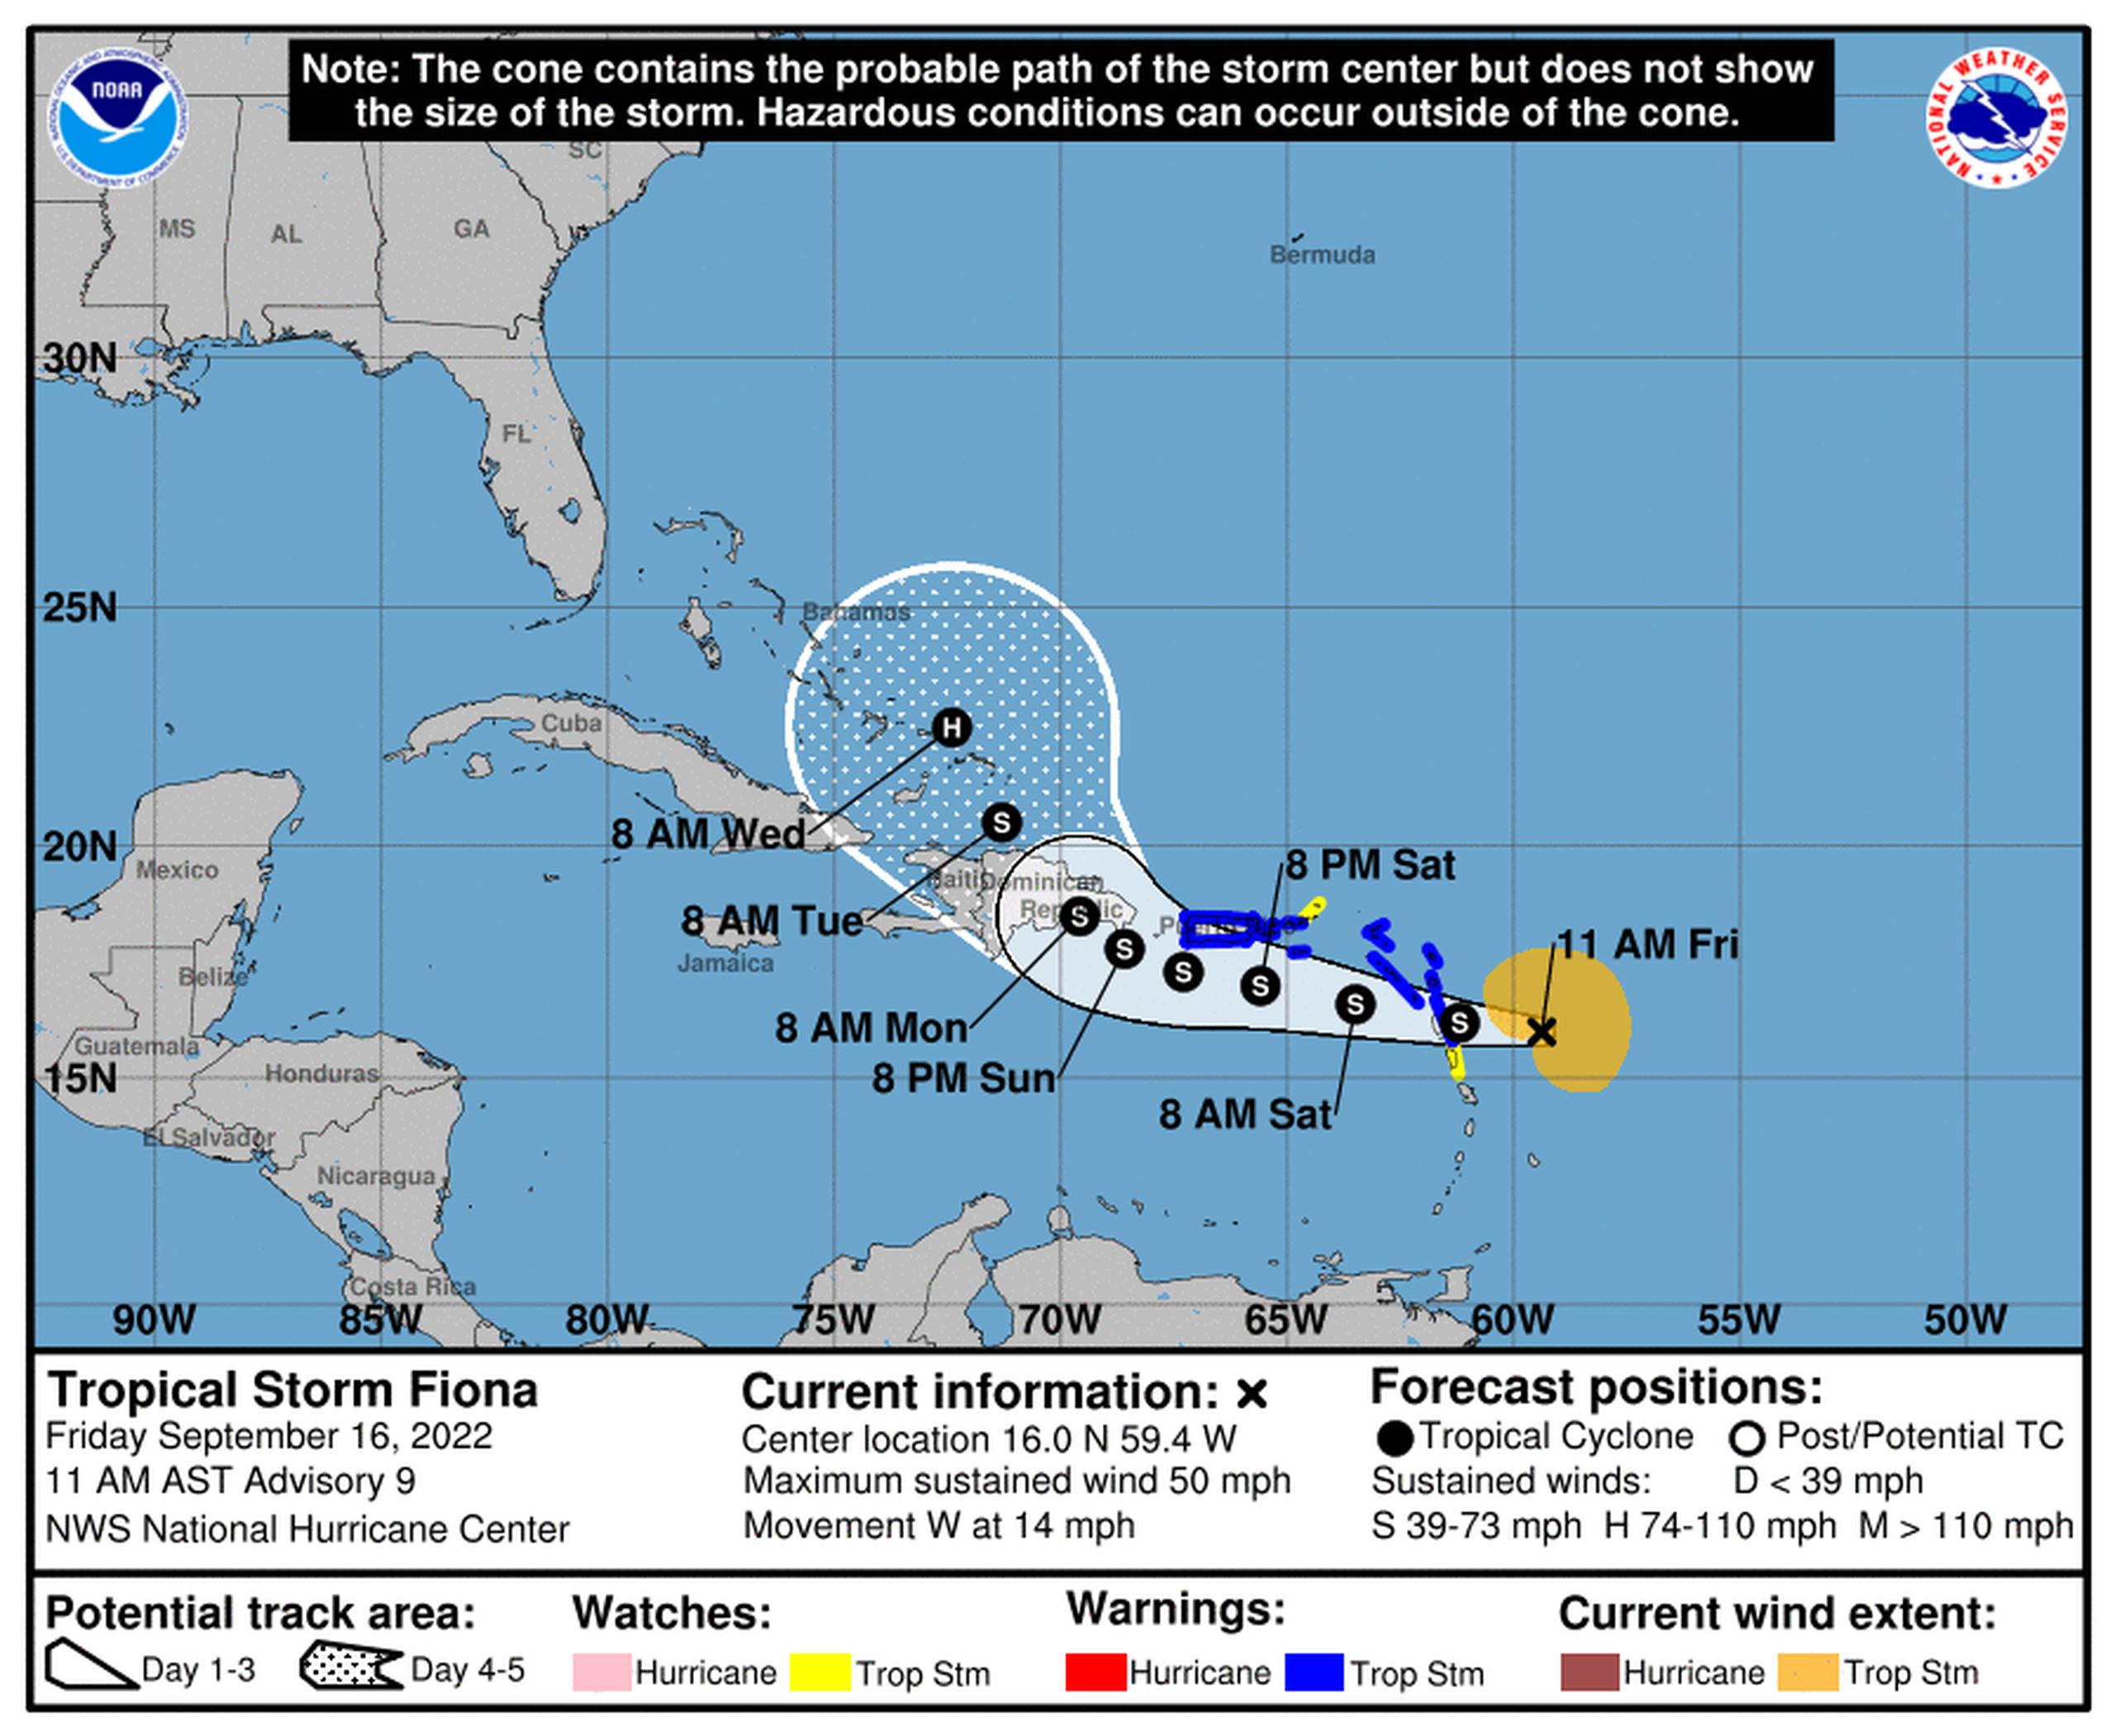 Pronóstico de la tormenta tropical Fiona emitido a las 11:00 de la mañana del 16 de septiembre de 2022.